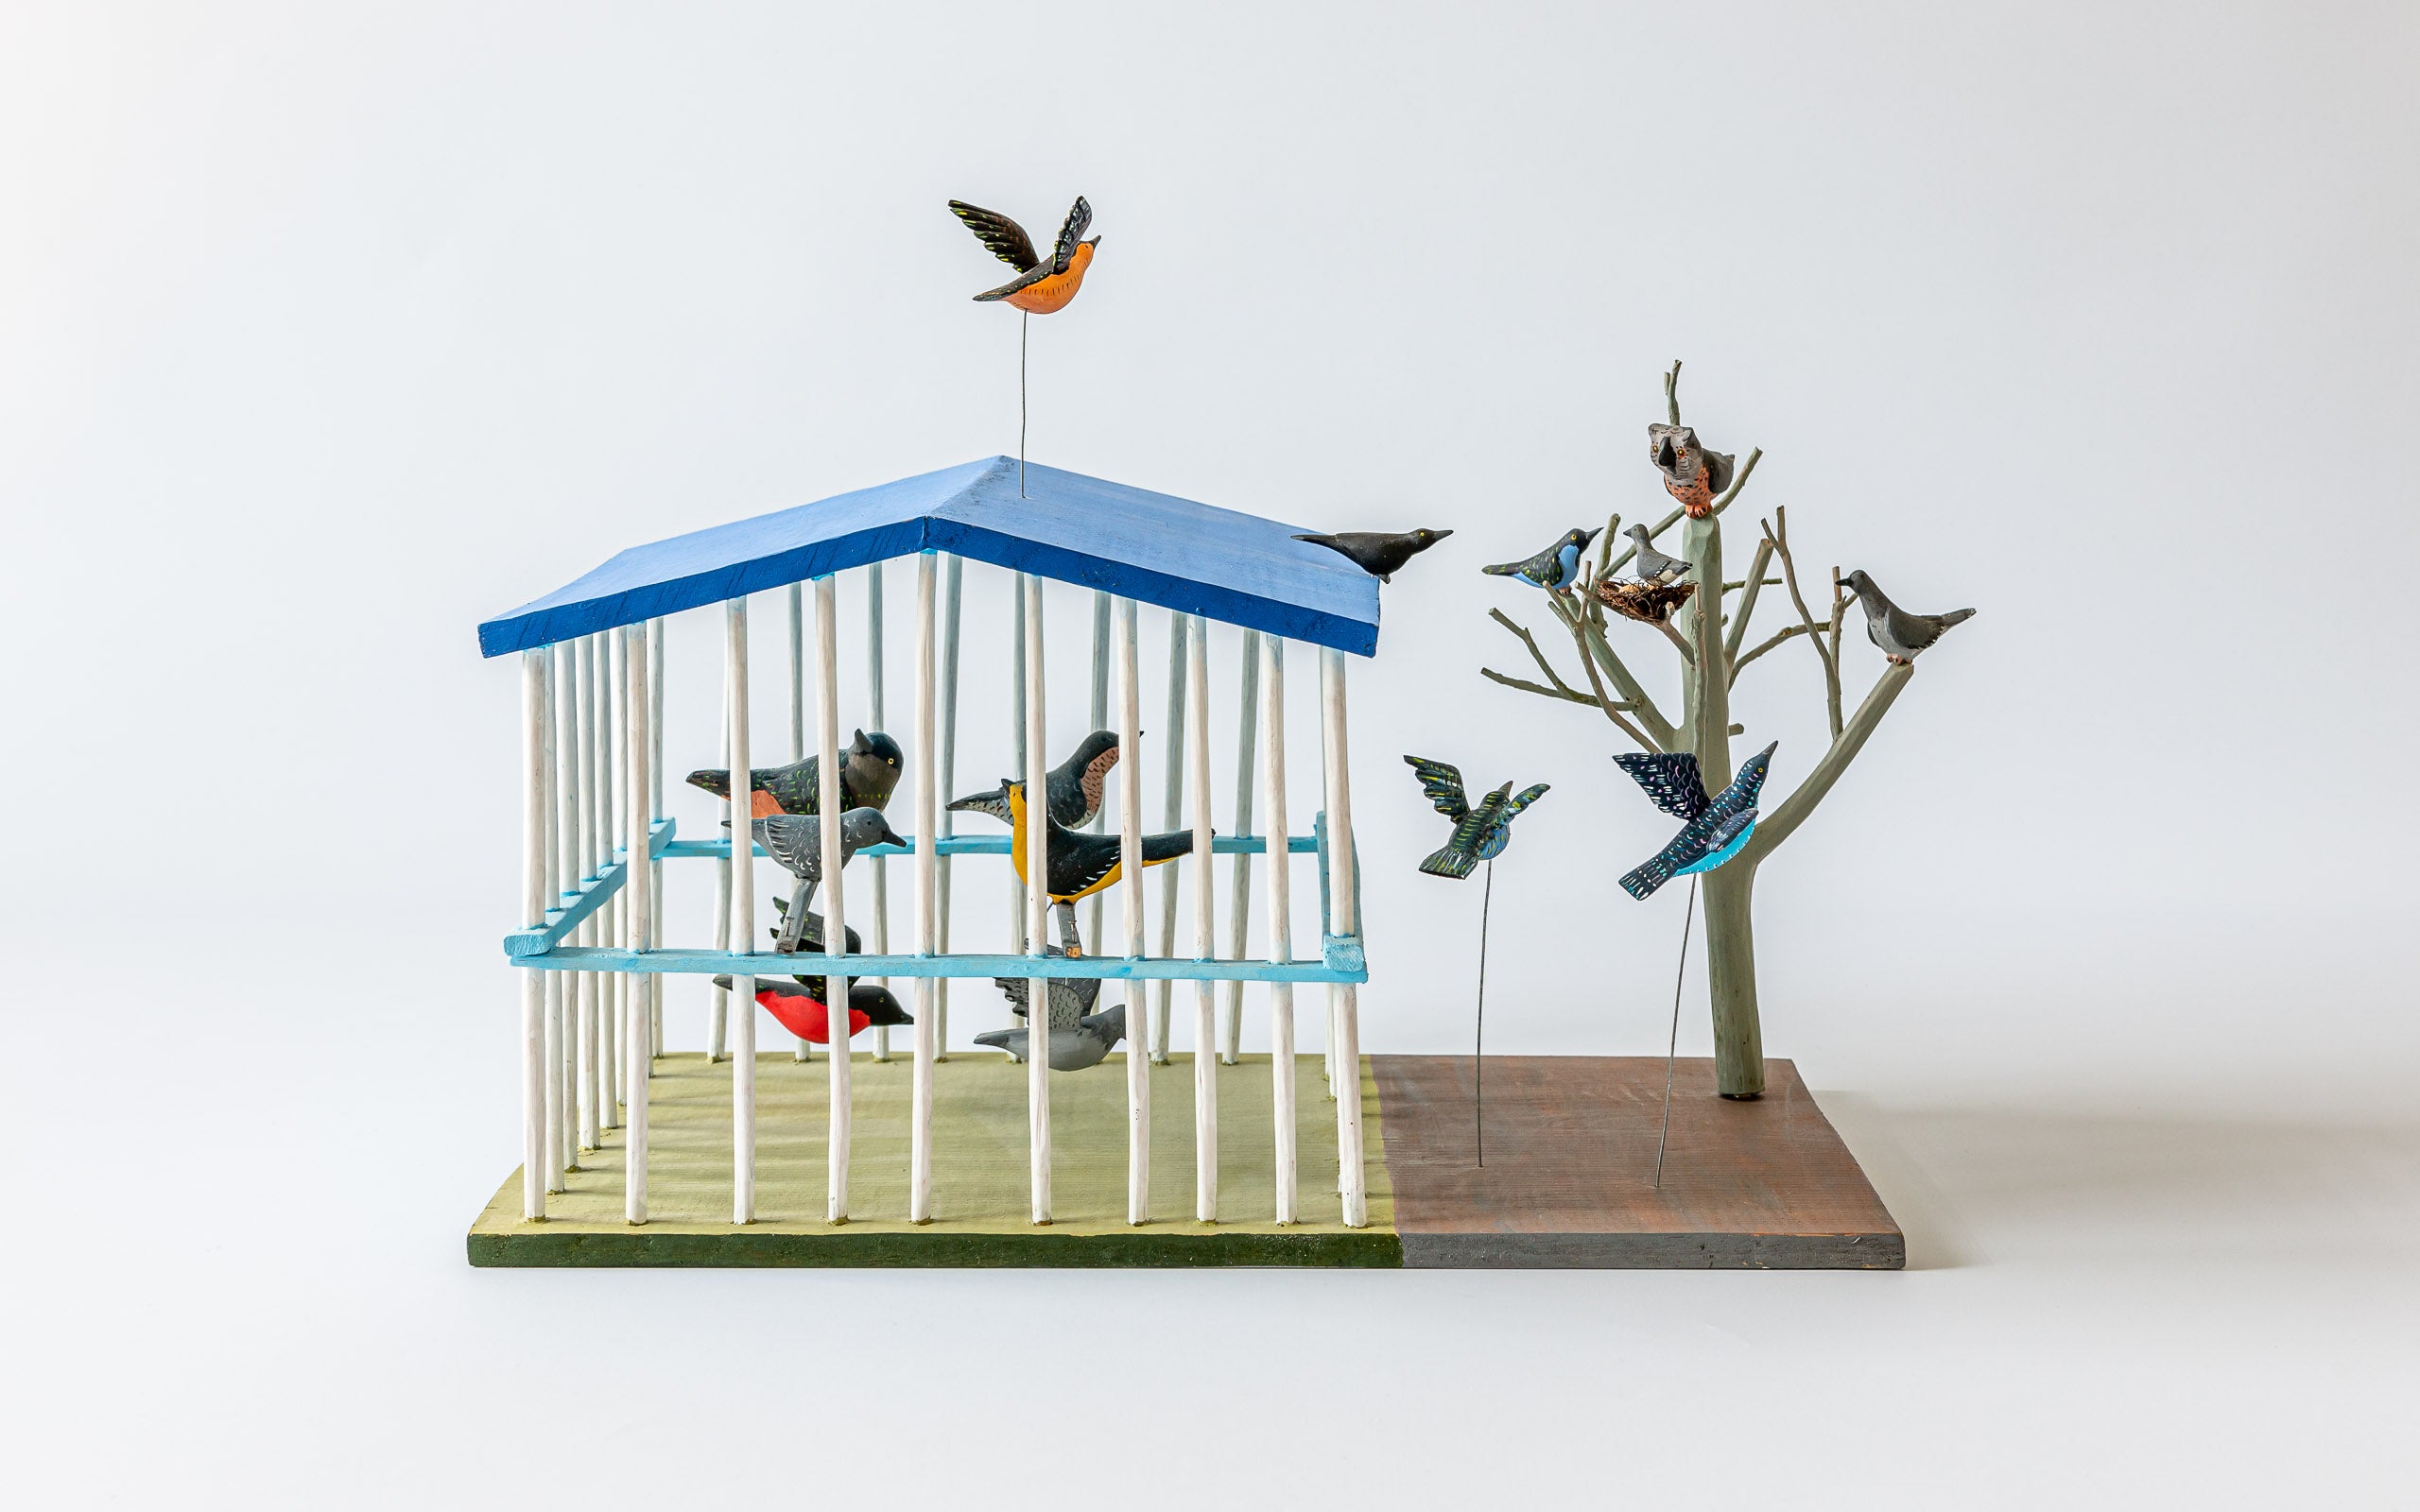 Vogelhaus: Szene mit Vogelhaus und Baum, mit Vögeln und einem Käuzchen Bemalte Holzarbeit von Oaxaca.